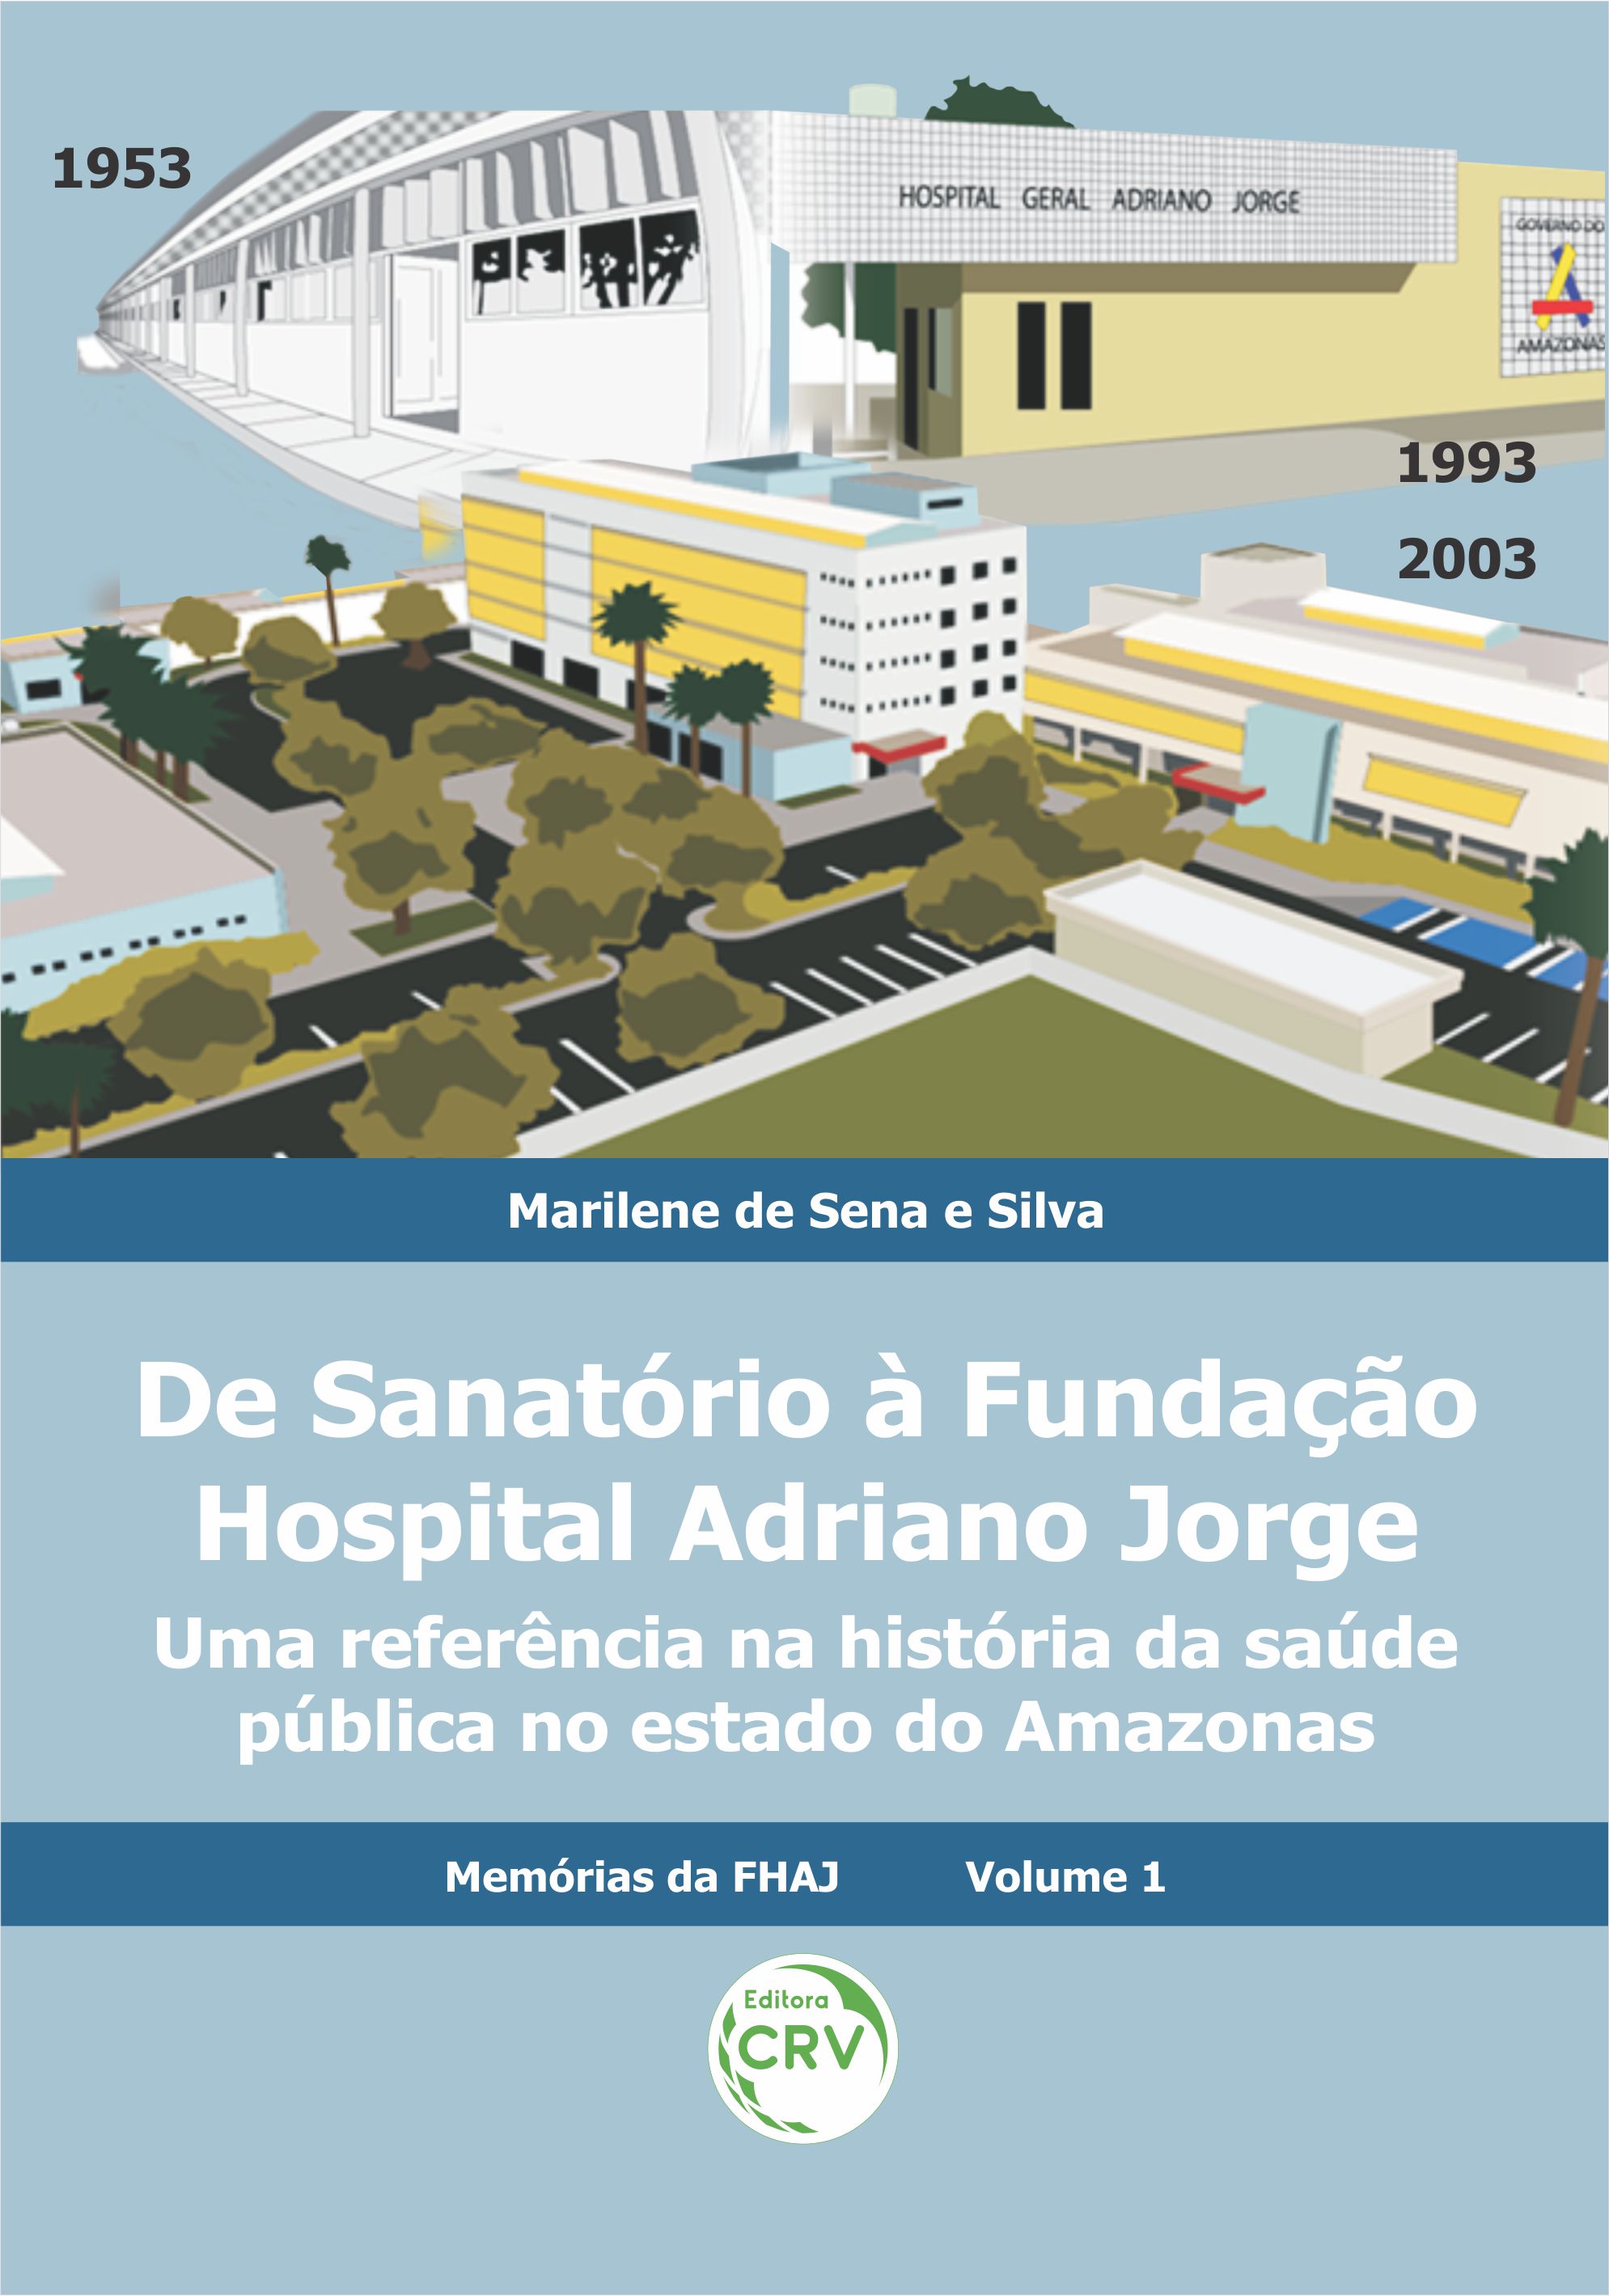 Capa do livro: DE SANATÓRIO À FUNDAÇÃO HOSPITAL ADRIANO JORGE: <br>uma referência na história da saúde pública no estado do Amazonas <br>Coleção Memórias da FHAJ - Volume 1